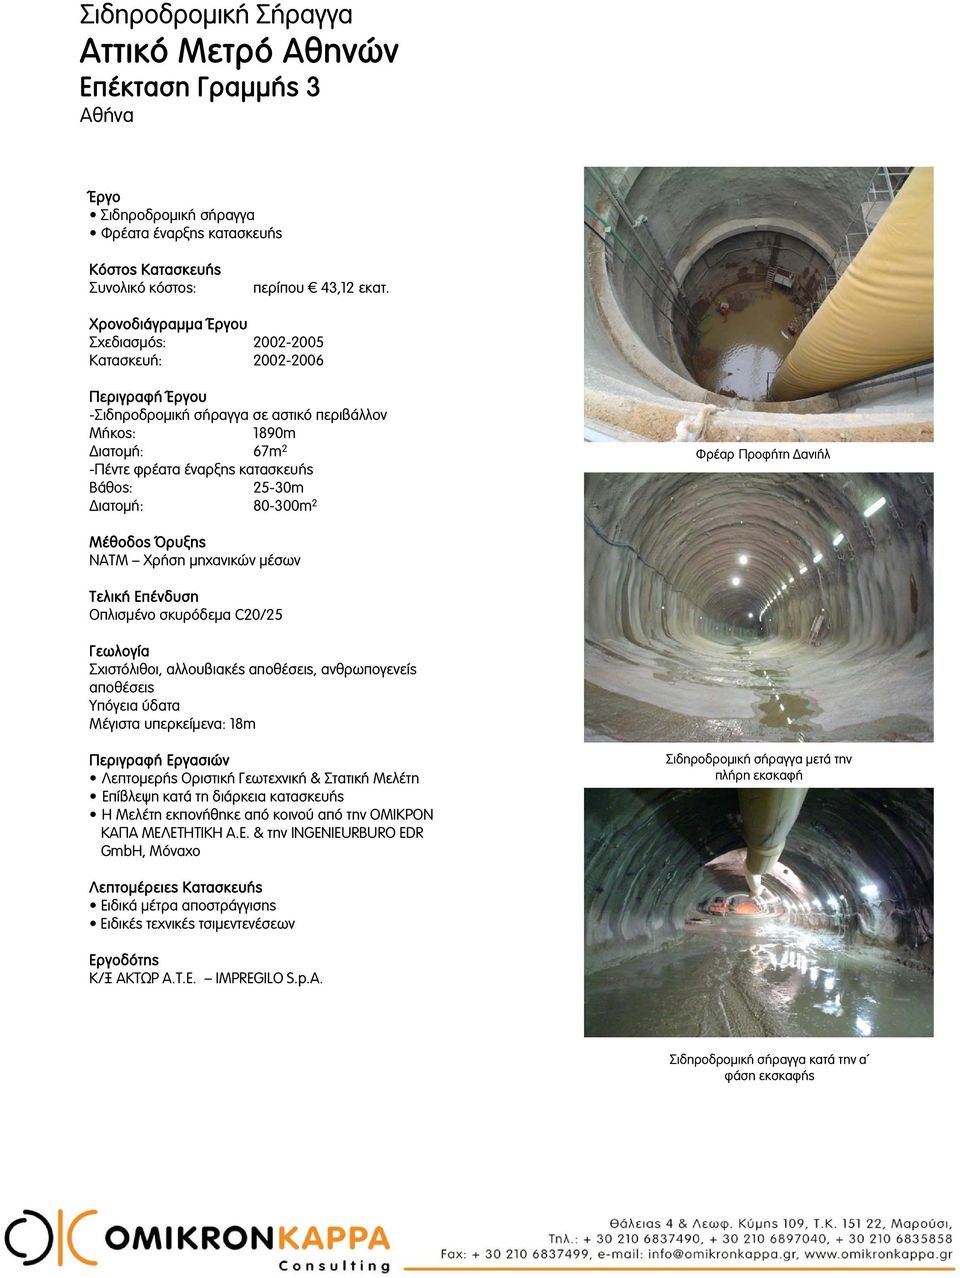 Μέθοδος Όρυξης NATM Χρήση μηχανικών μέσων Τελική Επένδυση Οπλισμένο σκυρόδεμα C20/25 Σχιστόλιθοι, αλλουβιακές αποθέσεις, ανθρωπογενείς αποθέσεις Υπόγεια ύδατα Μέγιστα υπερκείμενα: 18m Επίβλεψη κατά